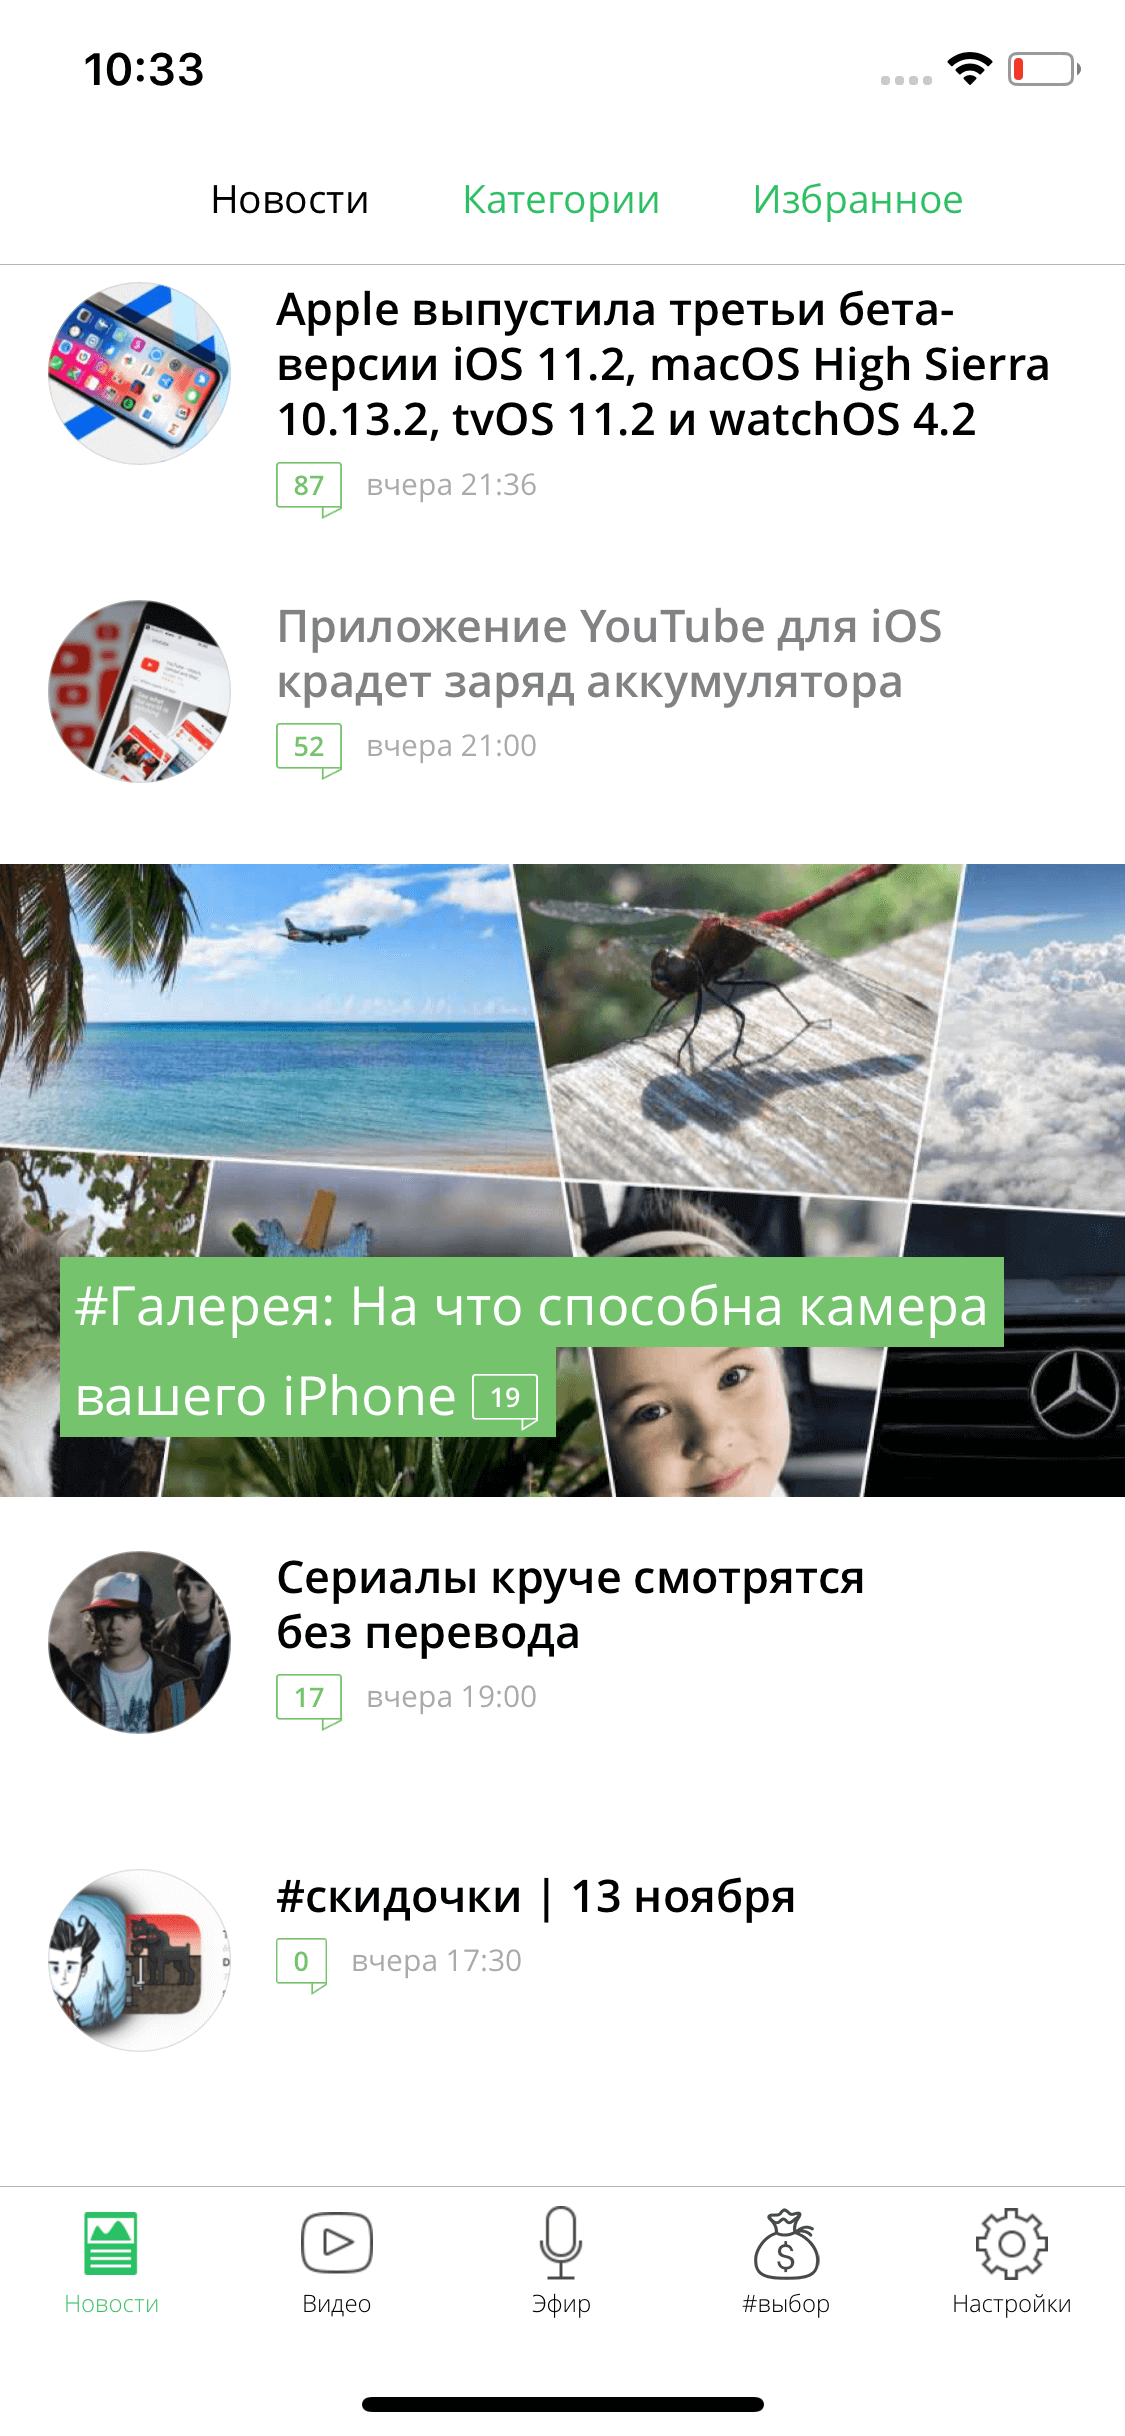 Встречайте обновленное приложение AppleInsider.ru с поддержкой iPhone X! Фото.